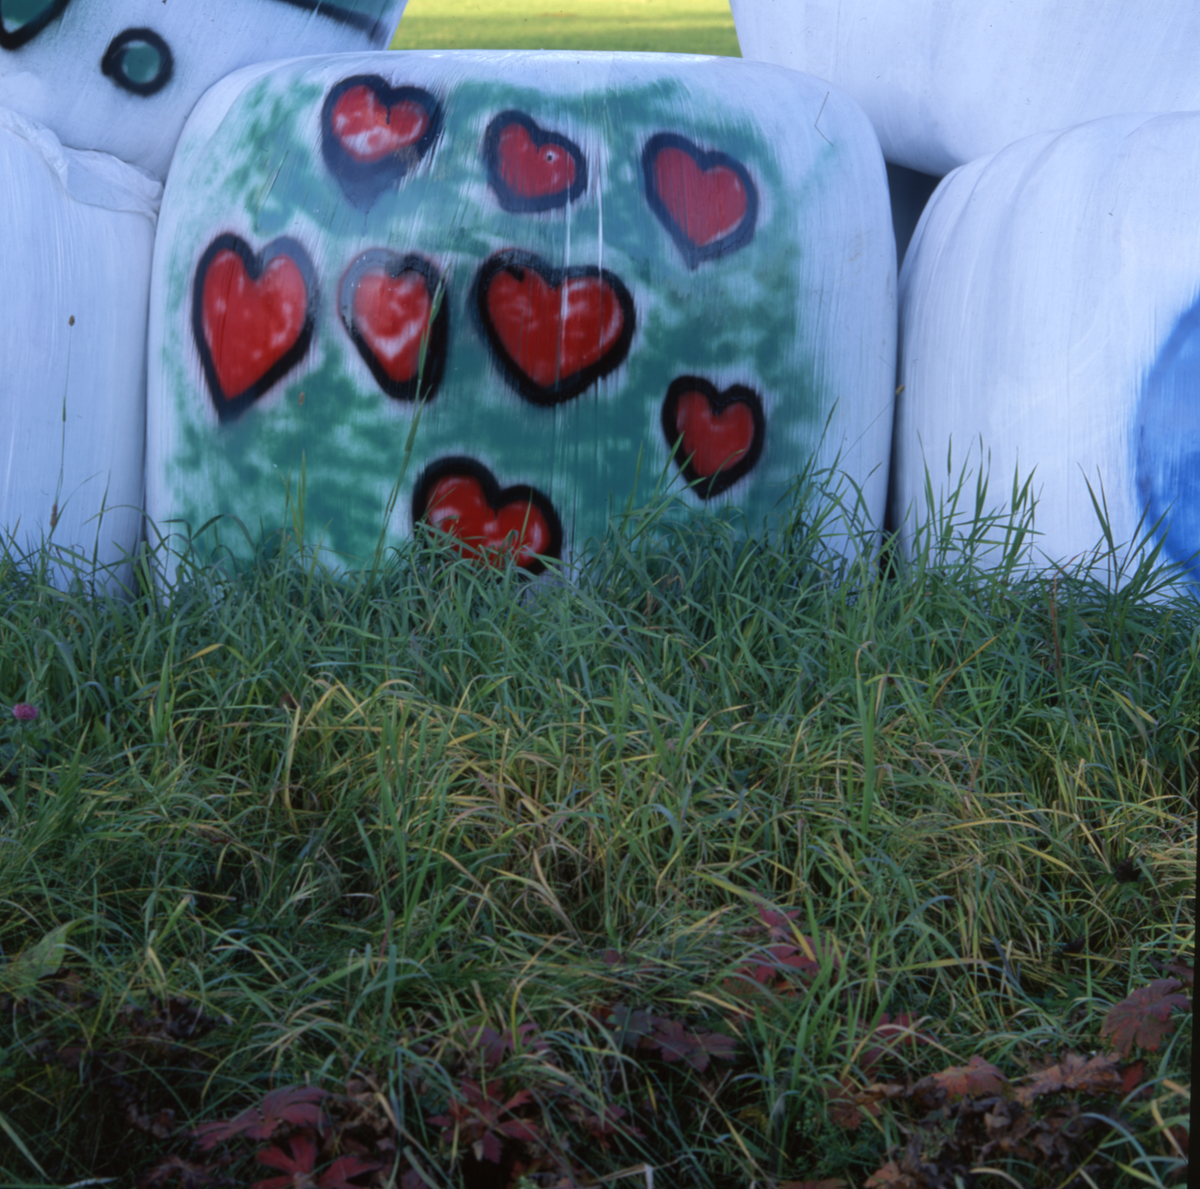 Inplastad ensilagebal i gräset. Plasten är målad med röda hjärtan.